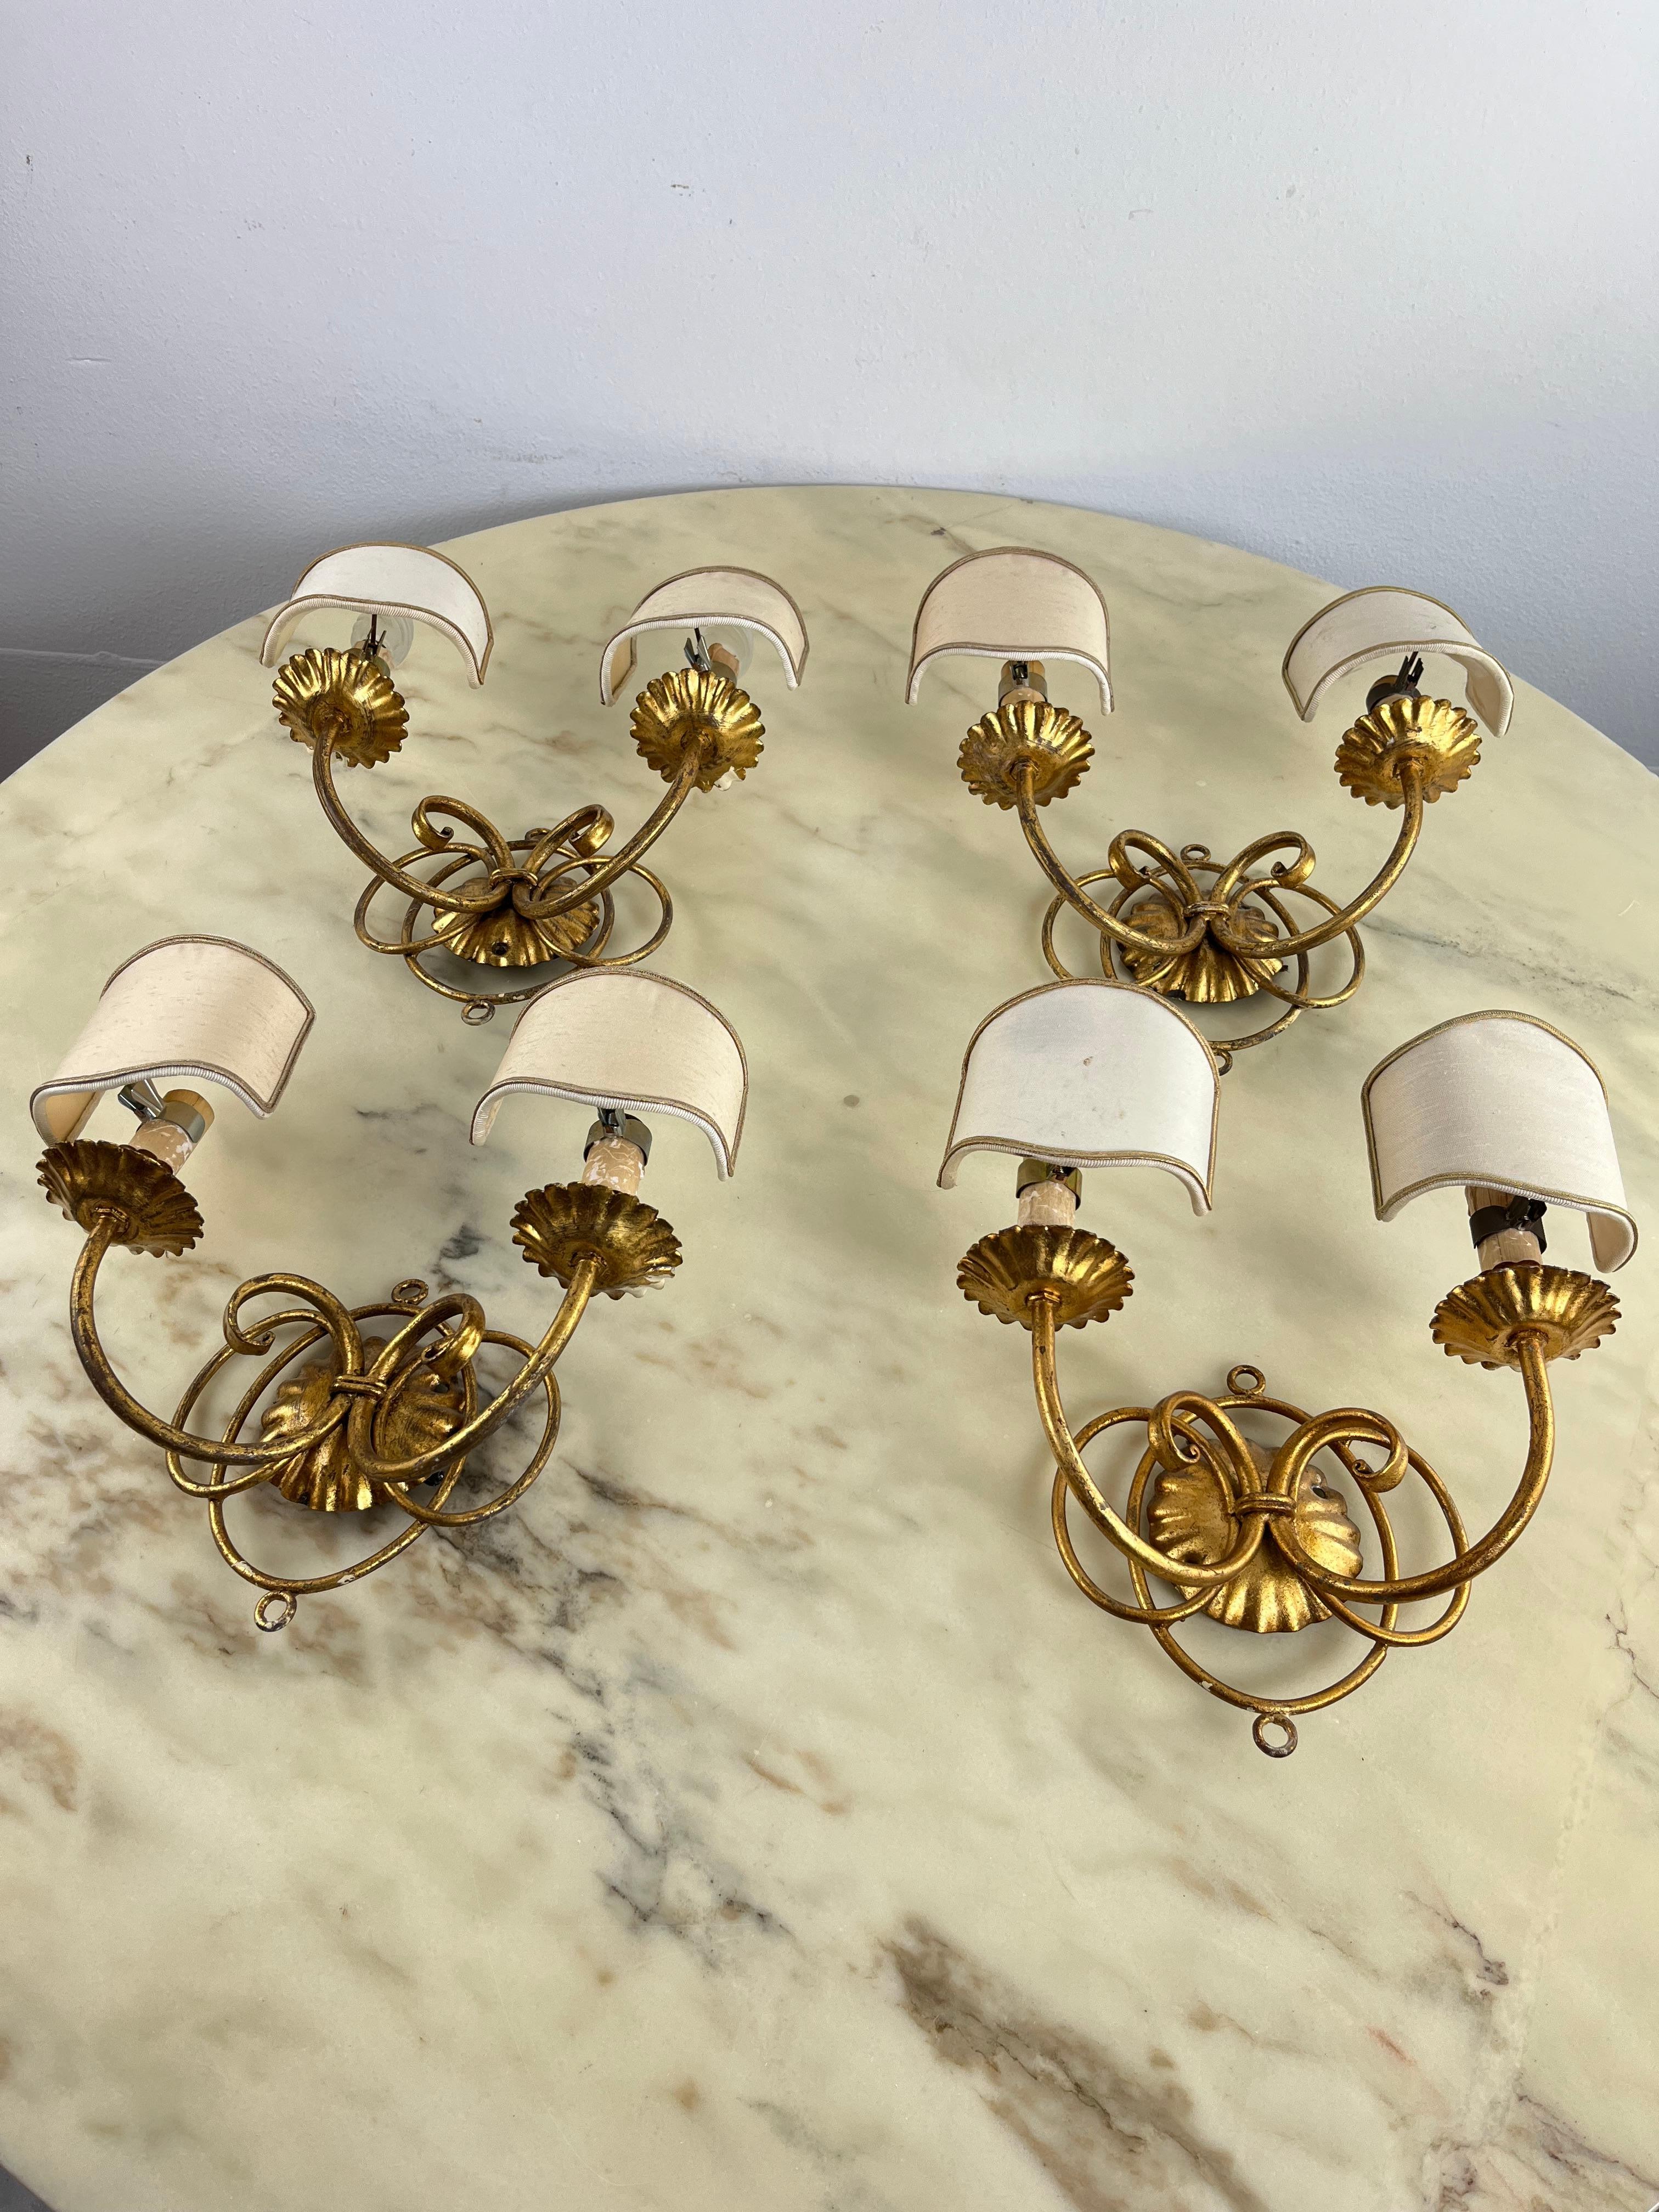 Satz von 4 goldenen schmiedeeisernen Wandleuchten, 80er Jahre italienisches Design
Handgefertigt von der Firma Li Puma in Florenz. Jede hat zwei e14-Lampen, die mit kleinen Stoffschirmen ausgestattet sind.
Intakt und funktionsfähig.
Guter Zustand,